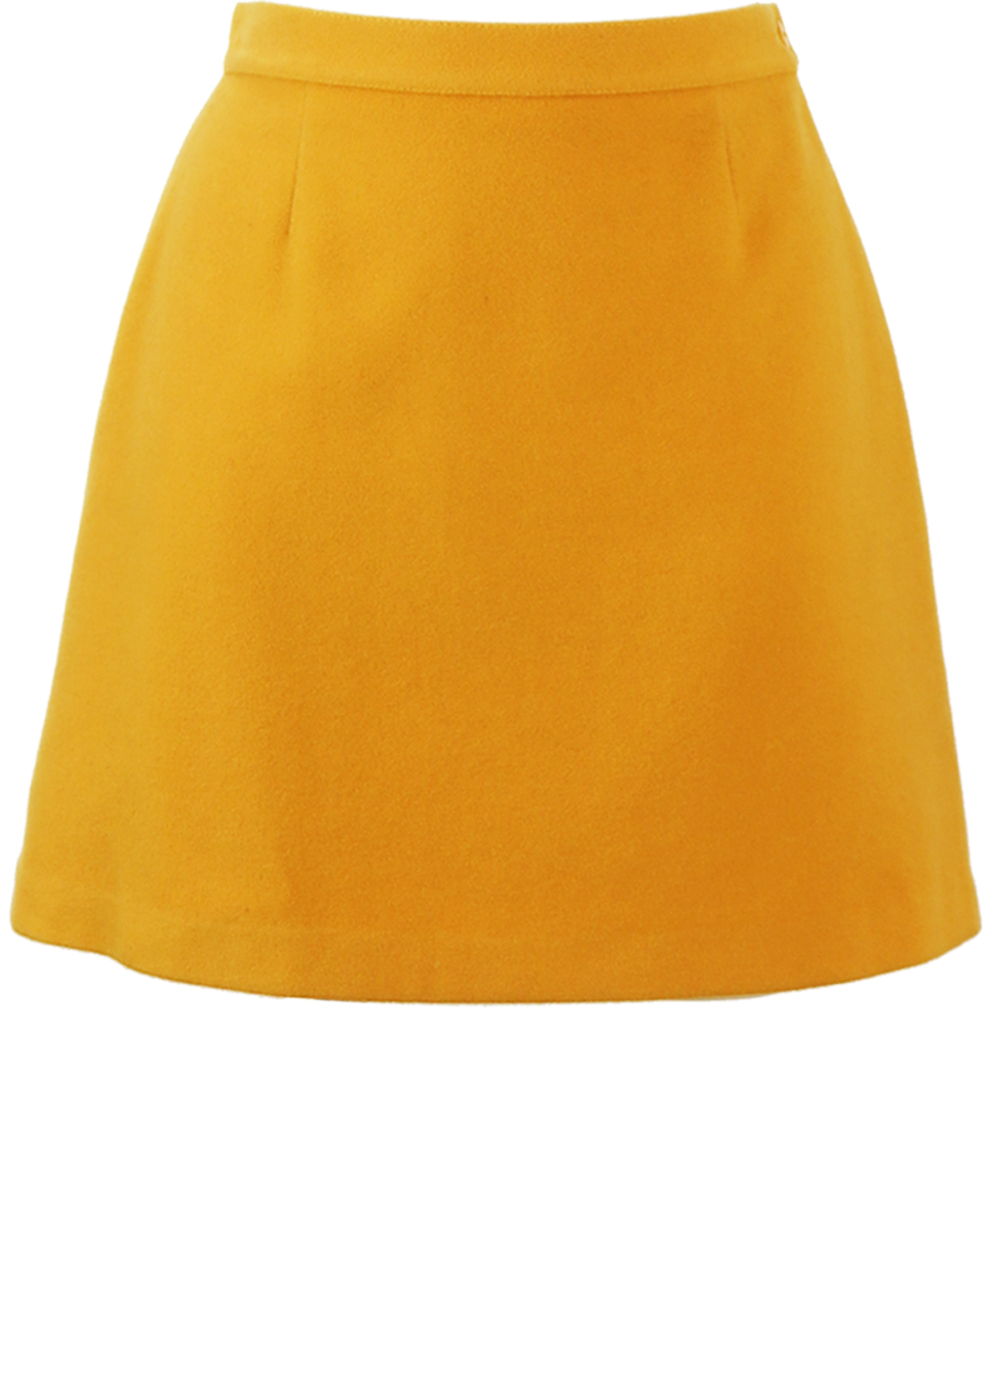 Mustard Yellow Wool Mini Skirt - S 